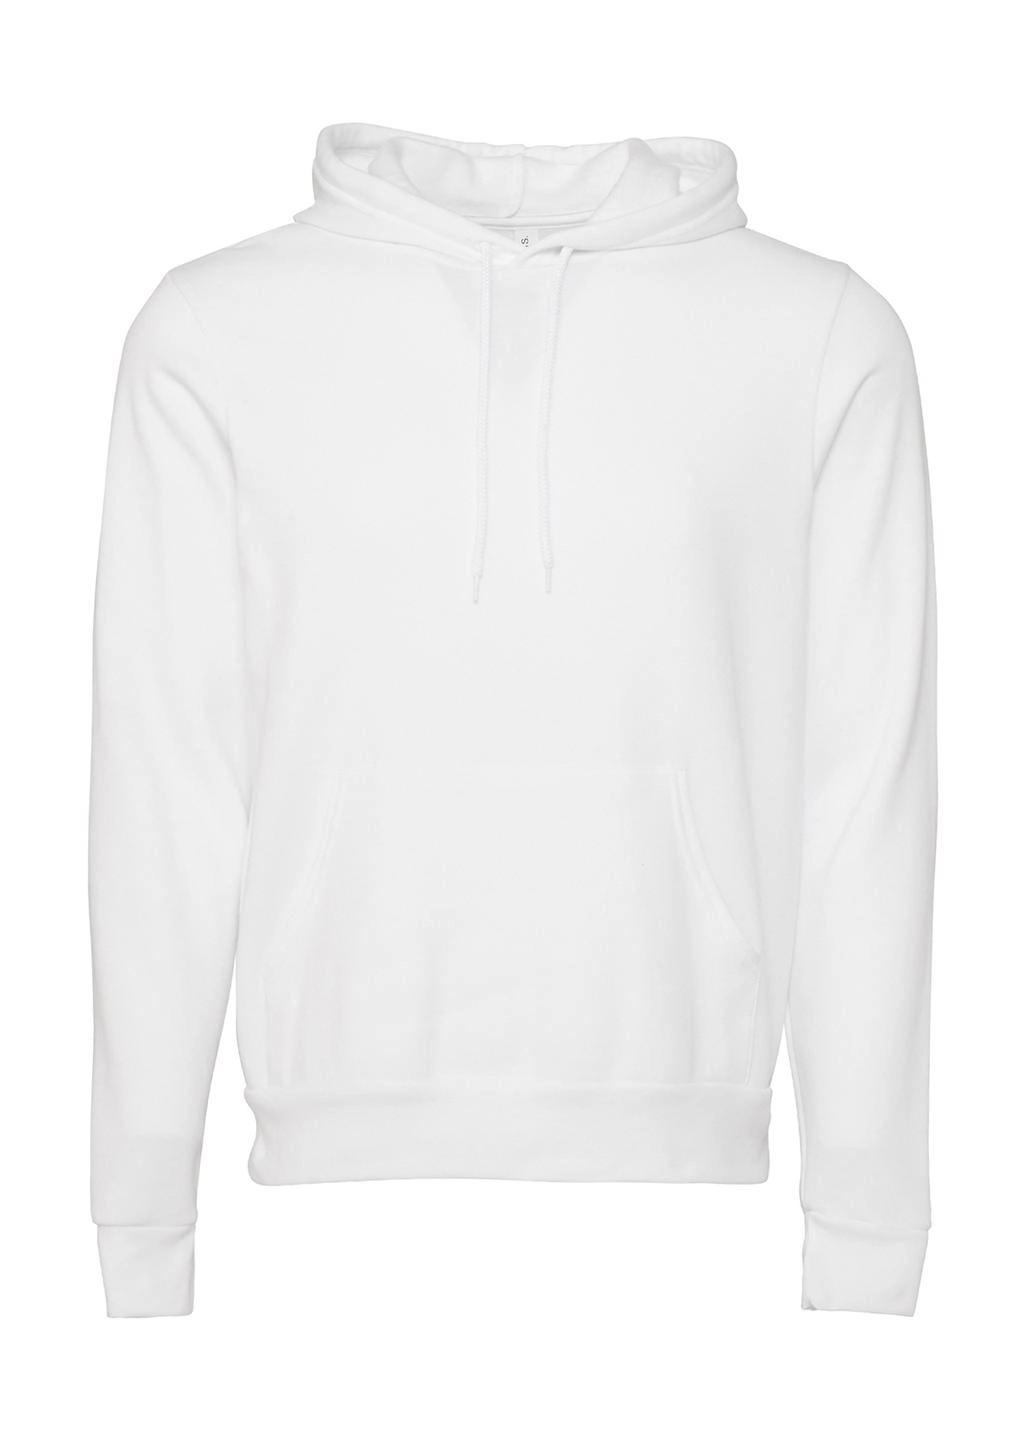 Unisex Poly-Cotton Pullover Hoodie zum Besticken und Bedrucken in der Farbe DTG White mit Ihren Logo, Schriftzug oder Motiv.